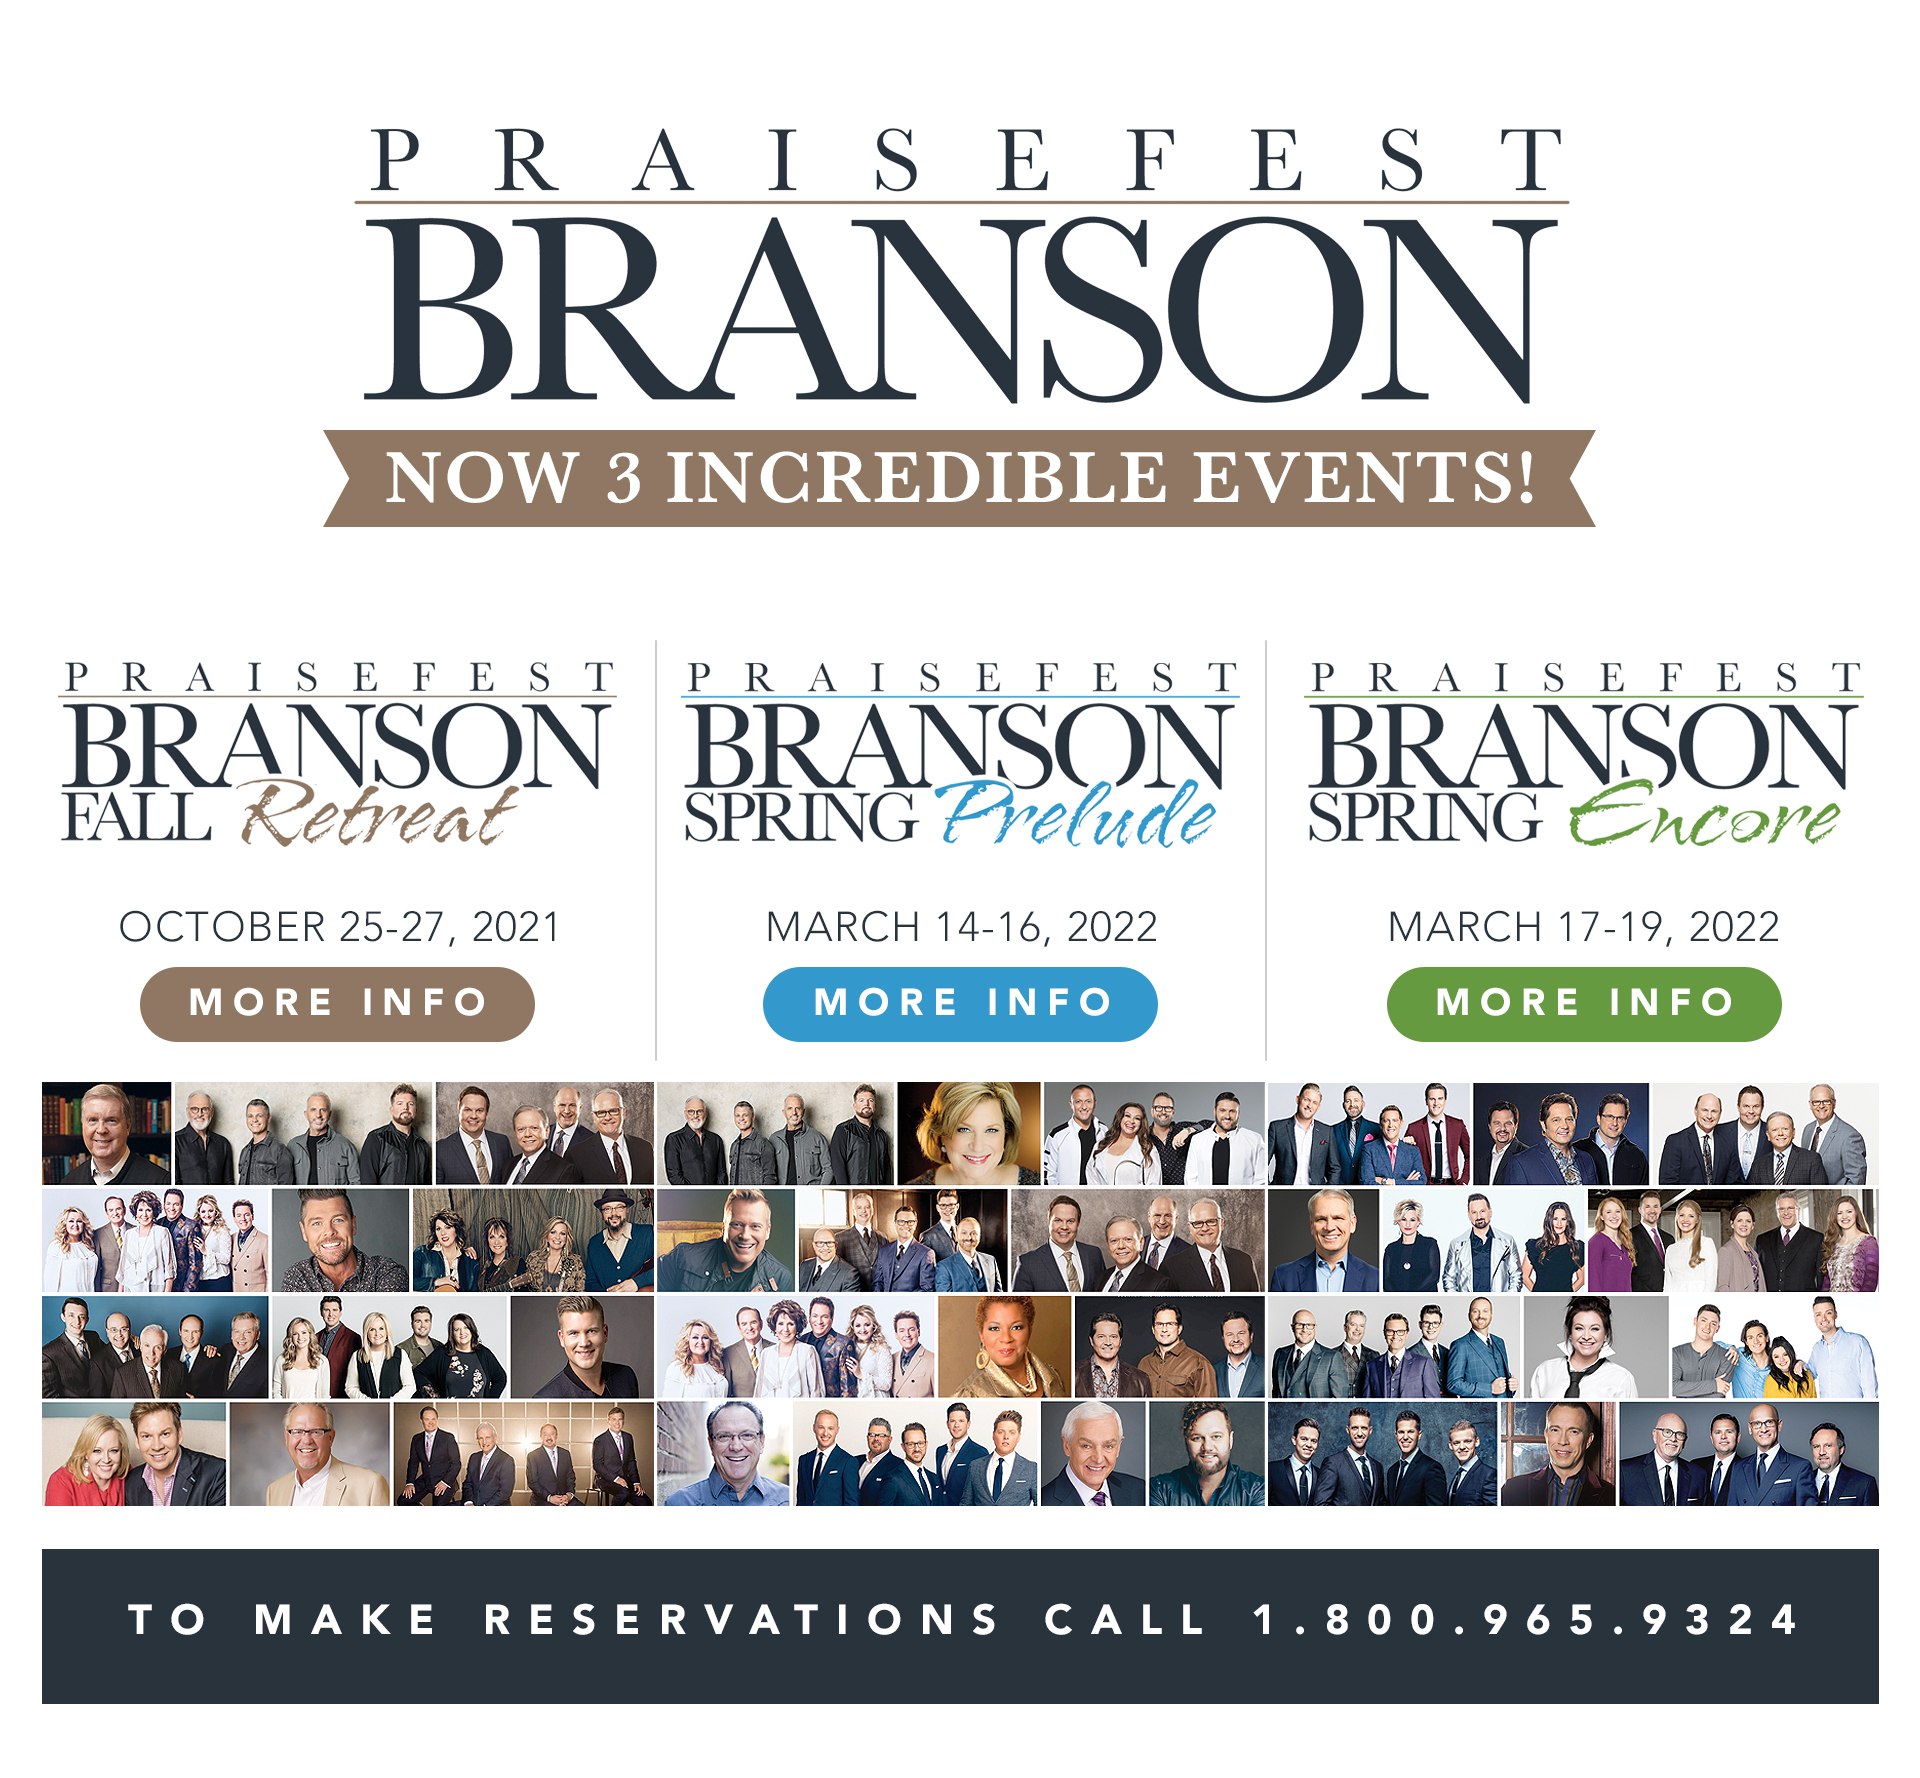 Praisefest Branson Missouri